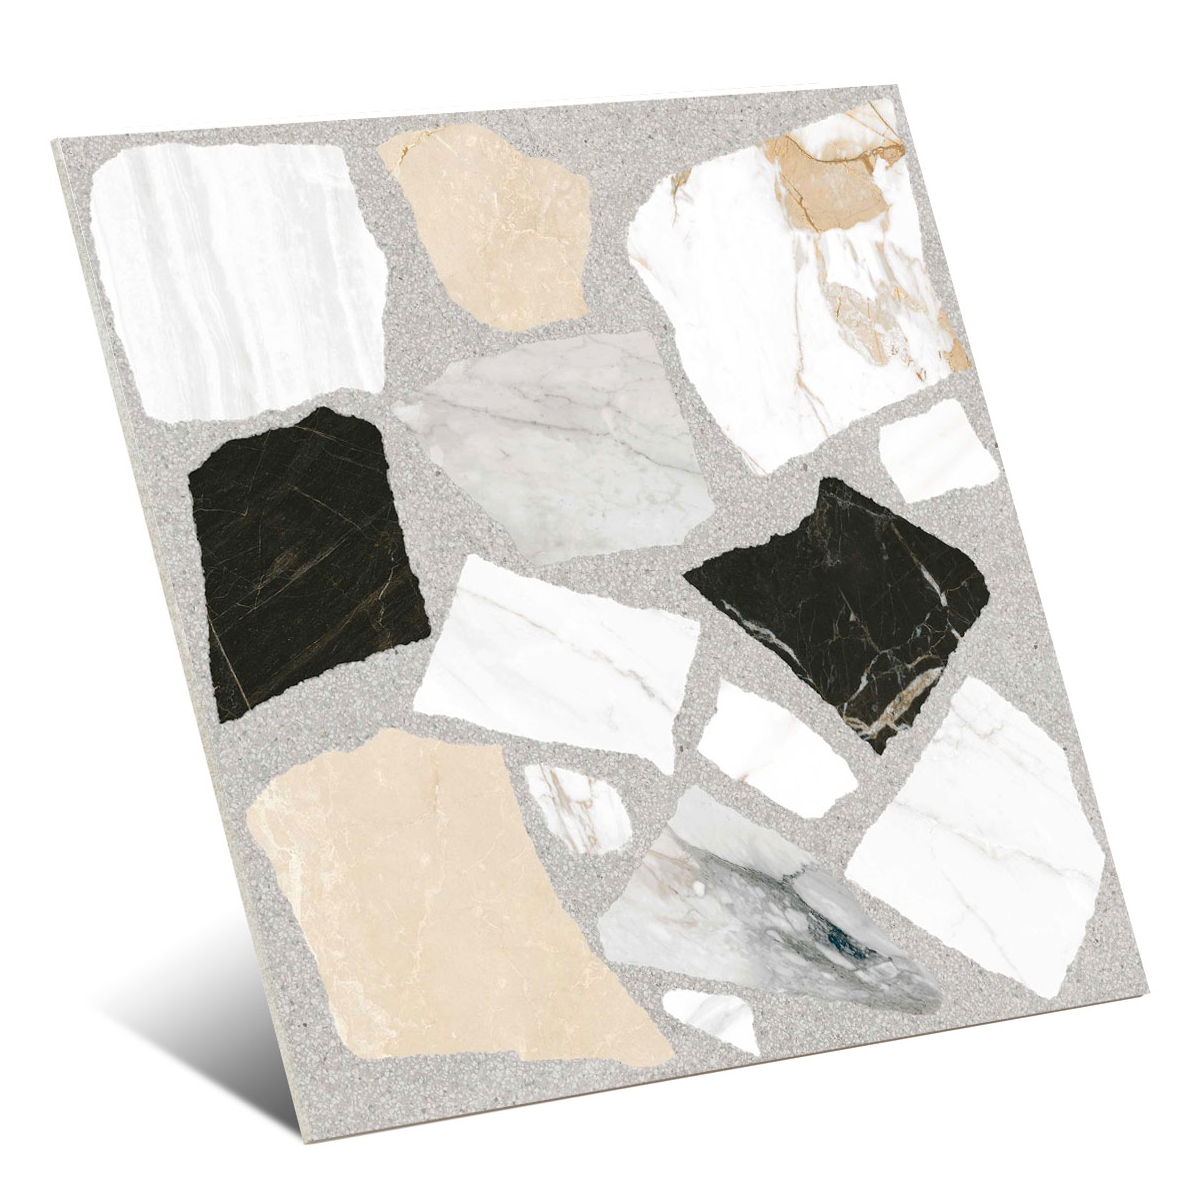 Pavimentos imitación mármol Vives - Nikoi-R 120x120 cm (caja 1.44 m2)